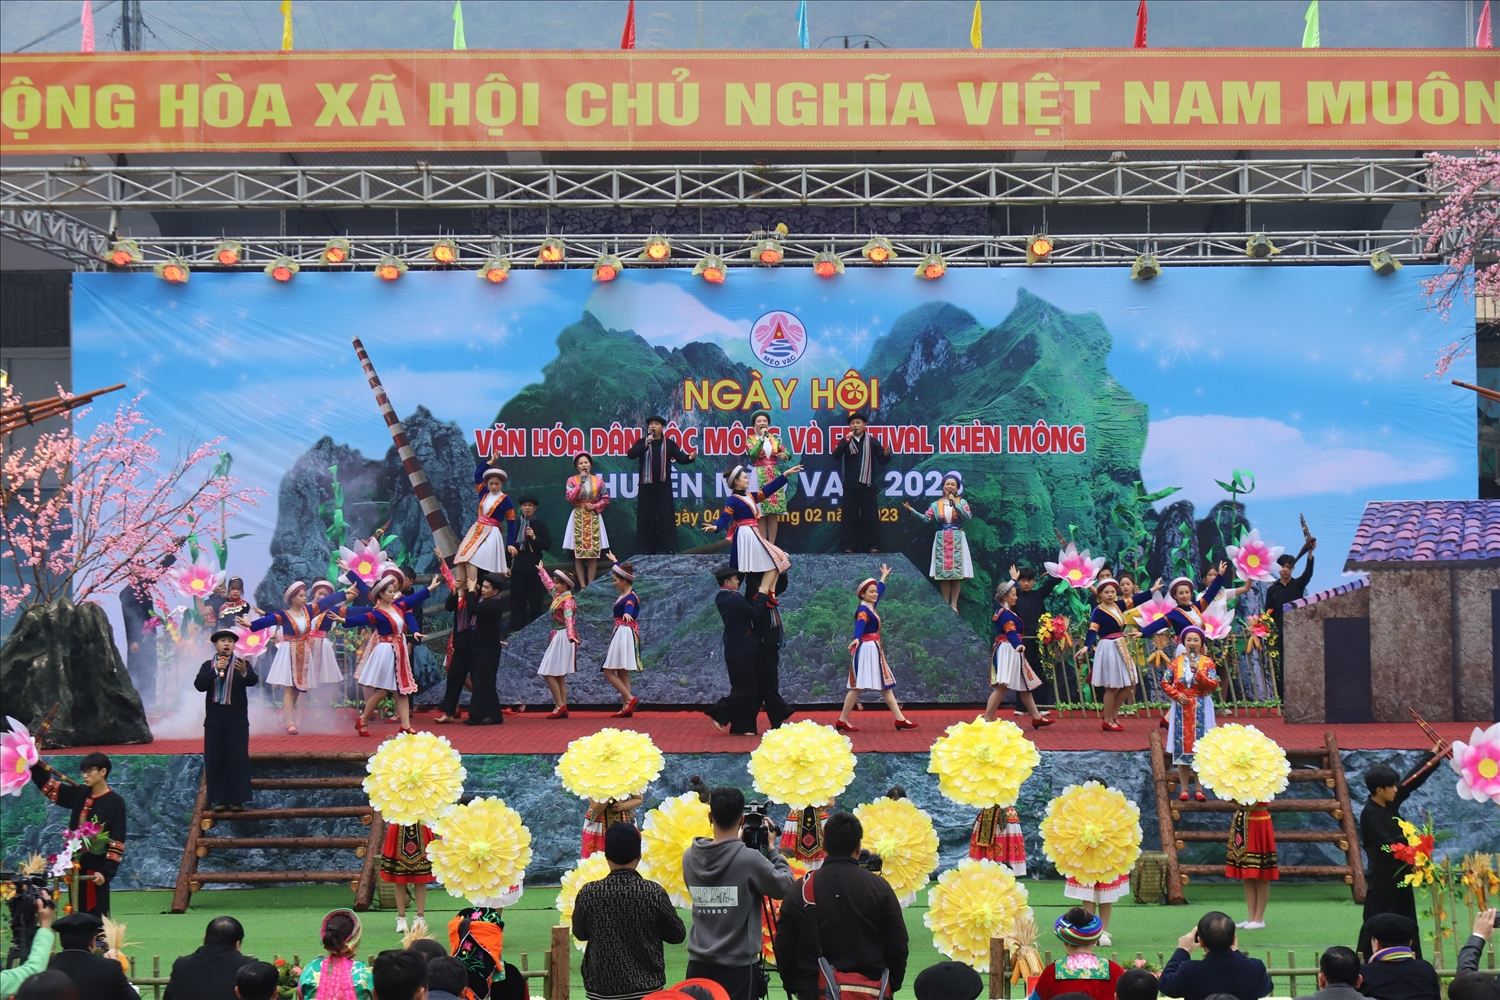 Nhiều tiết mục văn nghệ, nhiều trò chơi dân gian mang đậm bản sắc văn hóa dân tộc Mông được diễn ra tại Ngày hội. 